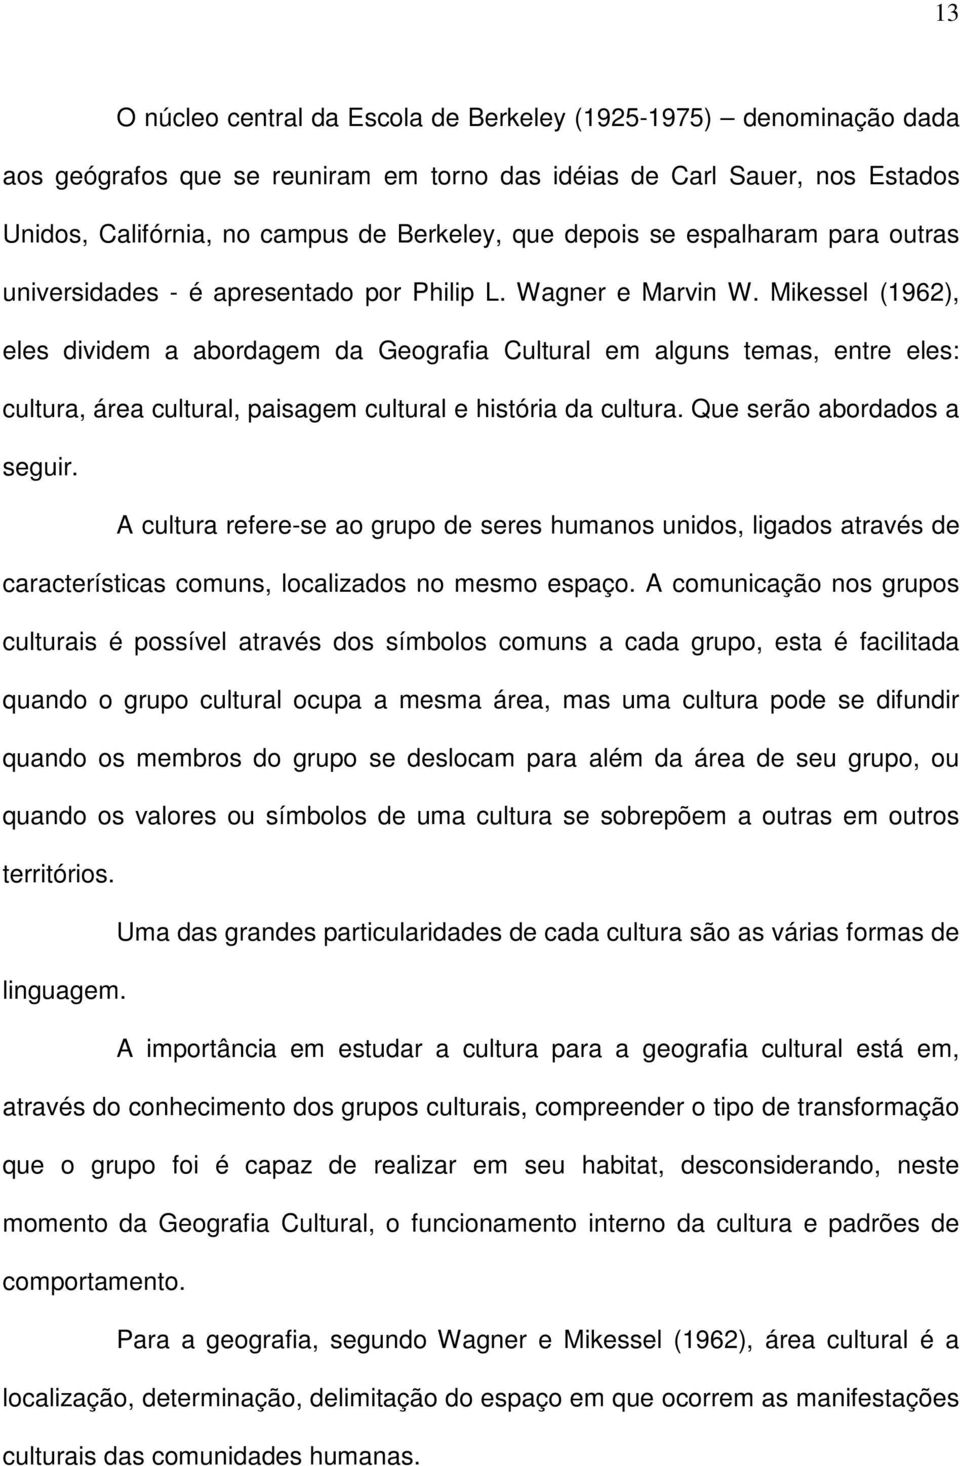 Mikessel (1962), eles dividem a abordagem da Geografia Cultural em alguns temas, entre eles: cultura, área cultural, paisagem cultural e história da cultura. Que serão abordados a seguir.